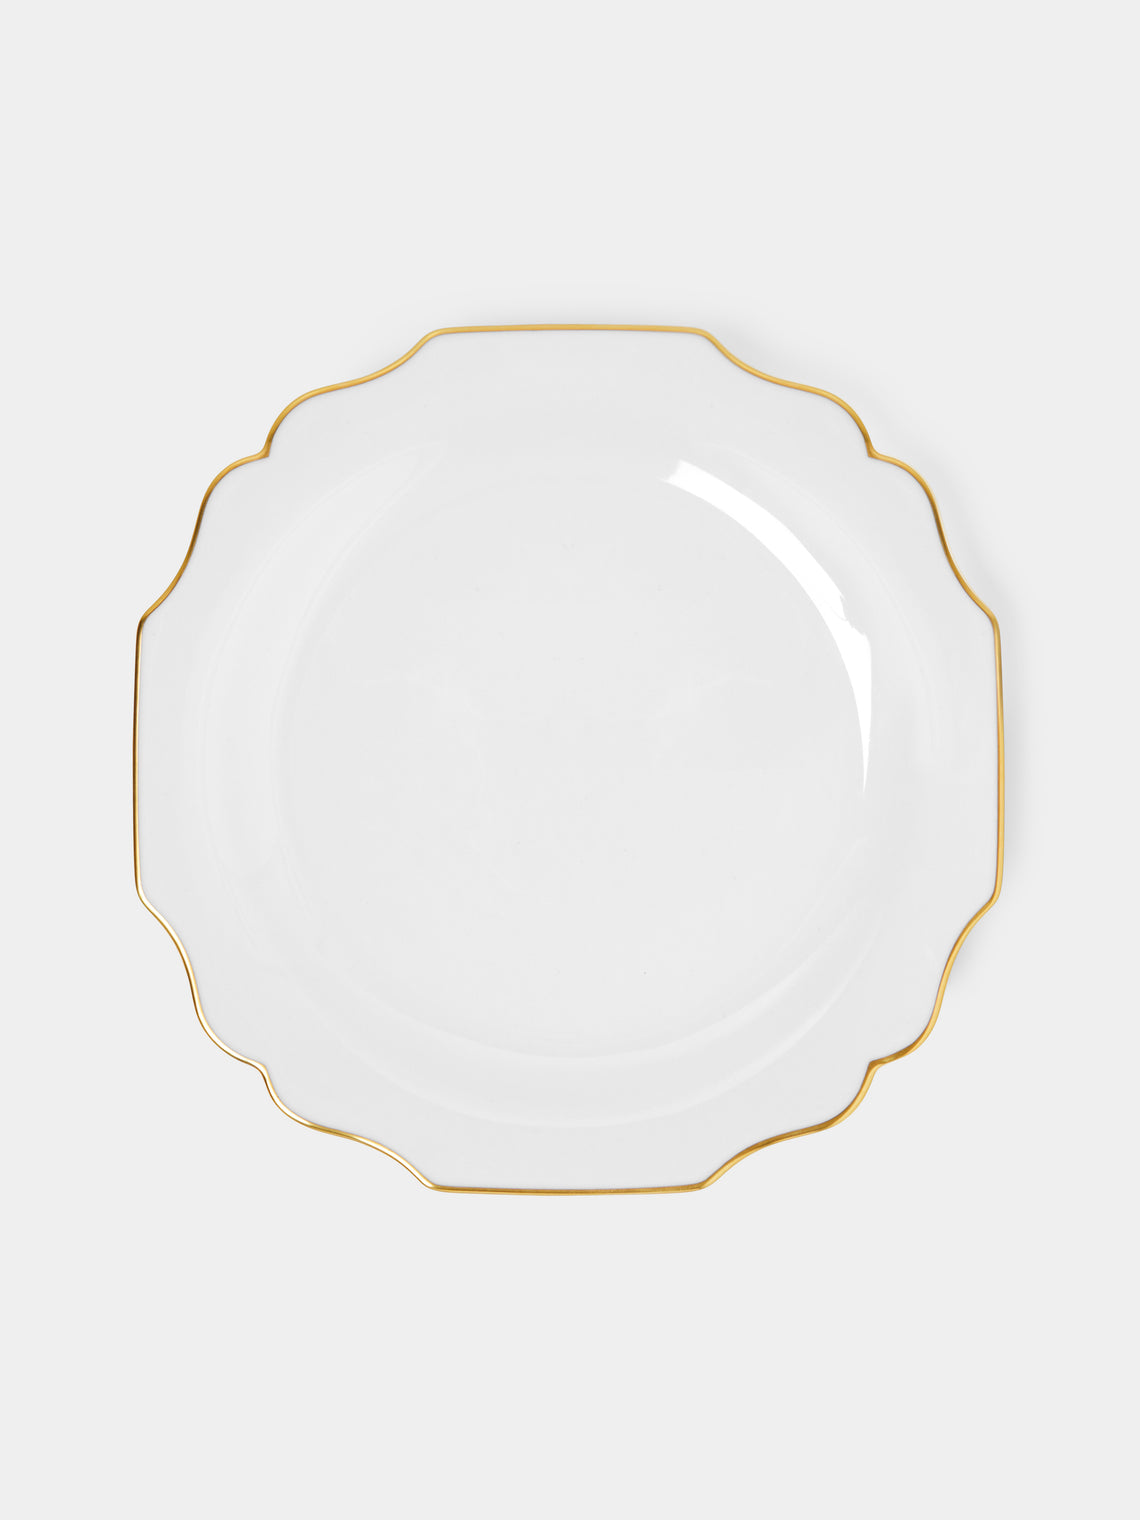 Augarten - Belvedere Hand-Painted Porcelain Dinner Plate - White - ABASK - 